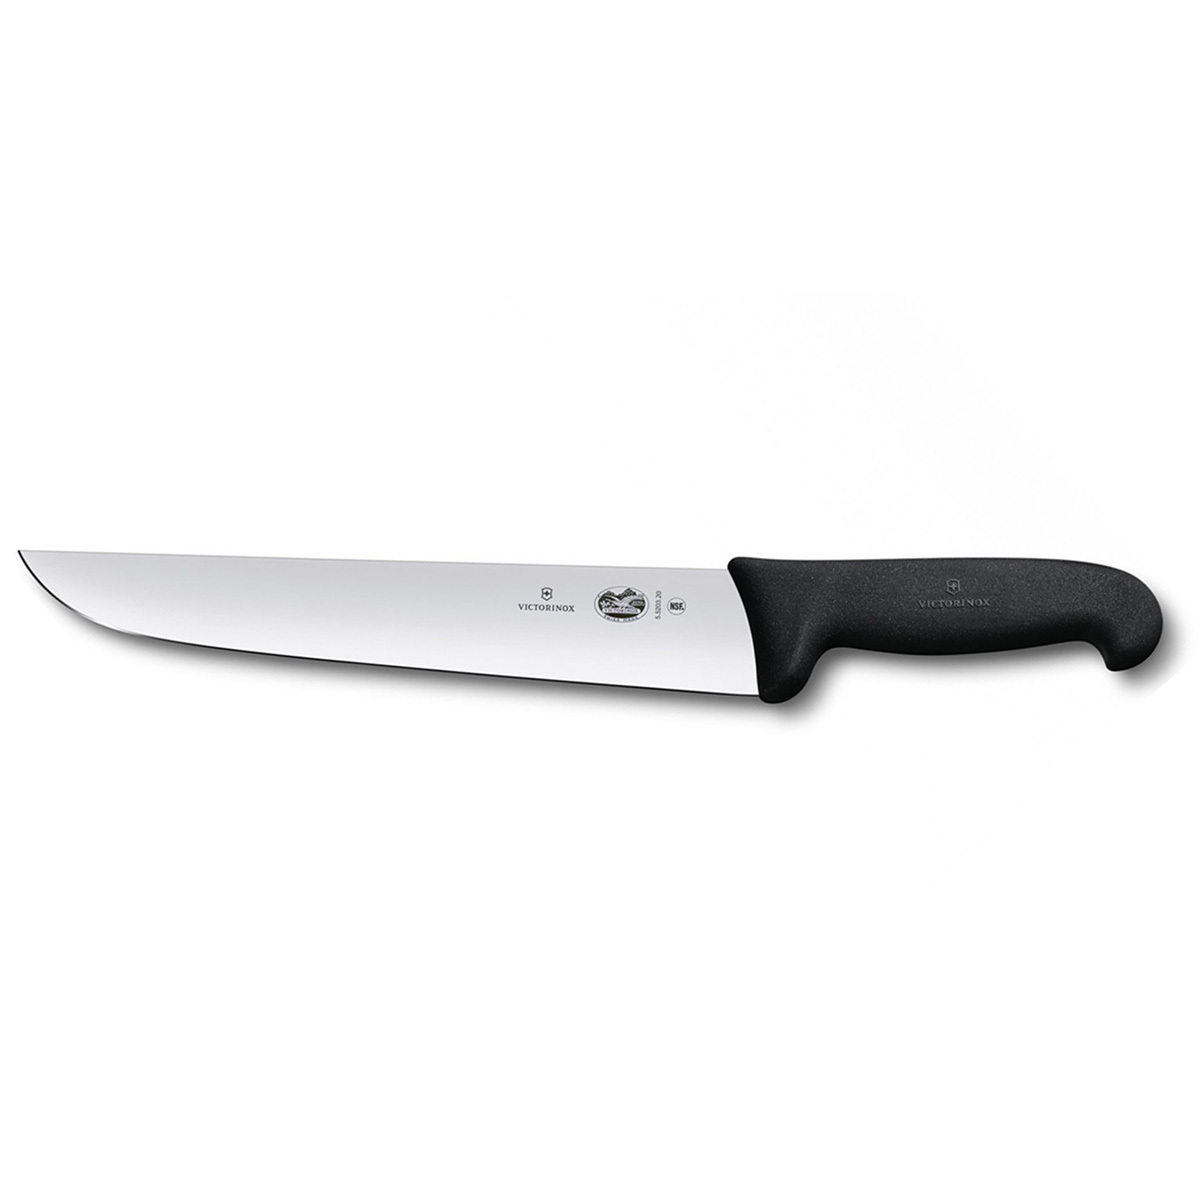 Кухонный мясной нож Victorinox 5.5203.20 кухонный нож для овощей victorinox 6 7706 l114